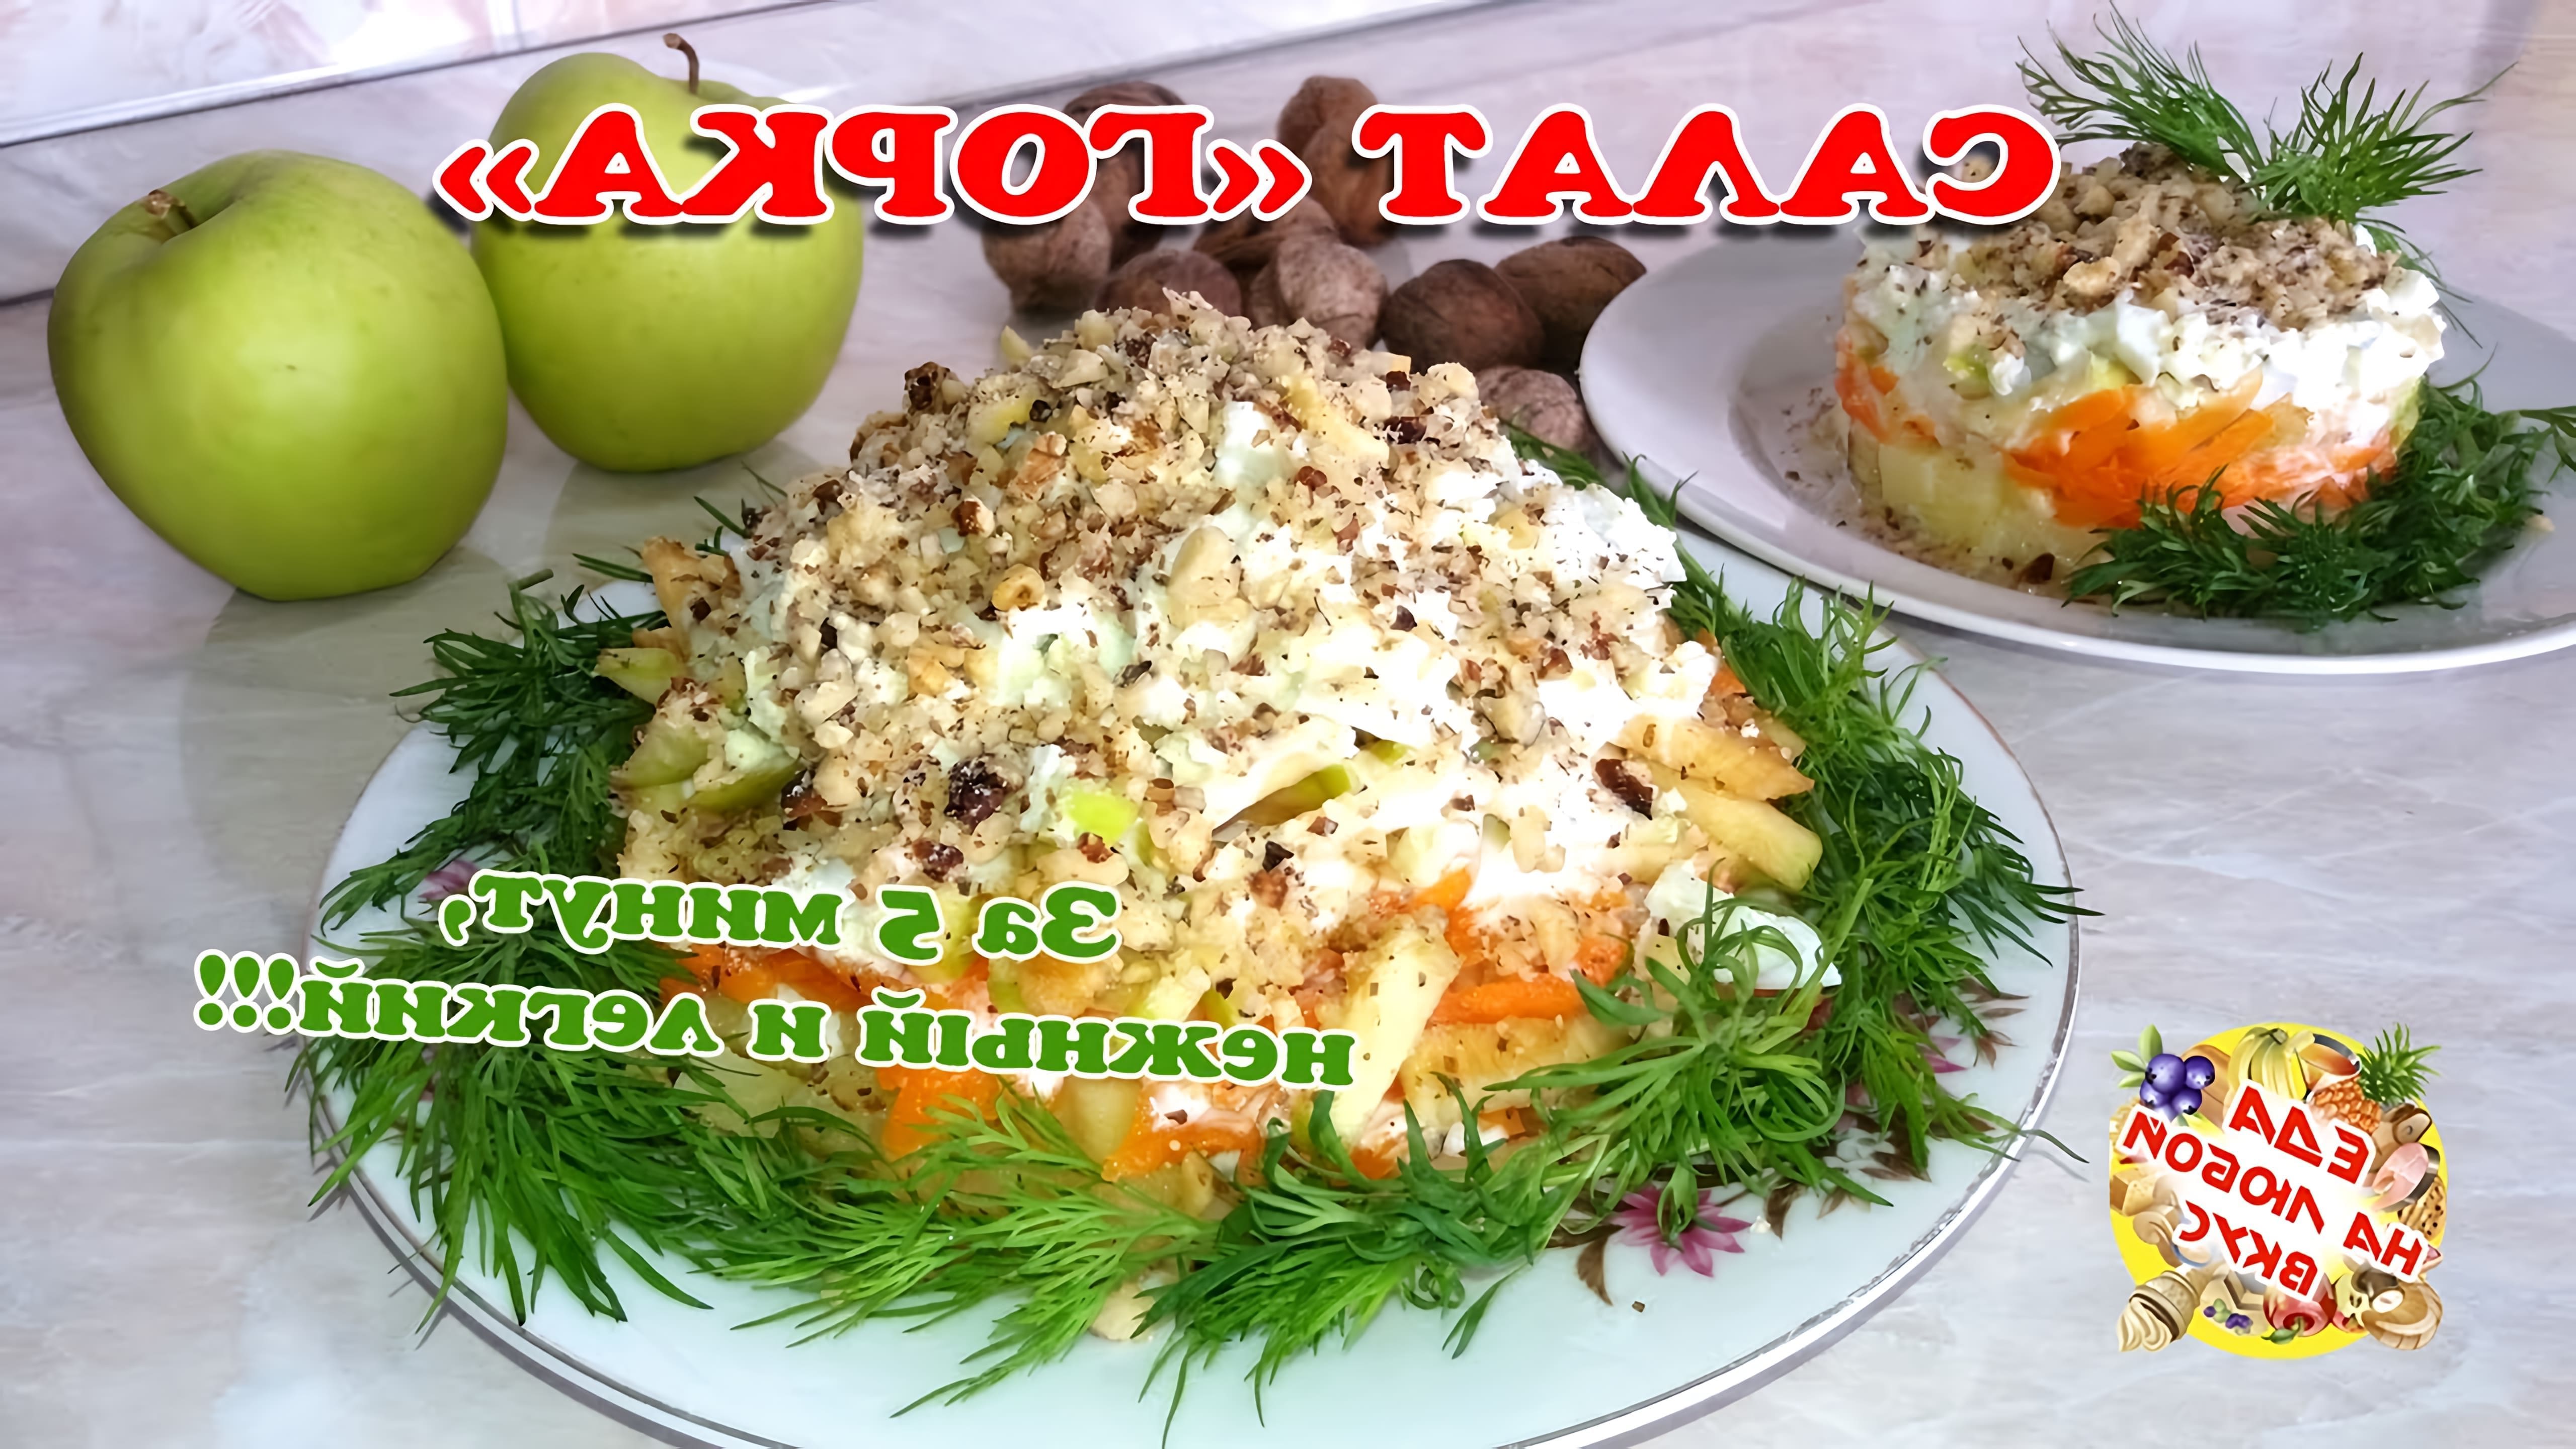 Рецепты салатов. Очень вкусный салат с яблоком, яйцом и морковкой. Легкий в приготовлении! Простой и вкусный салат... 